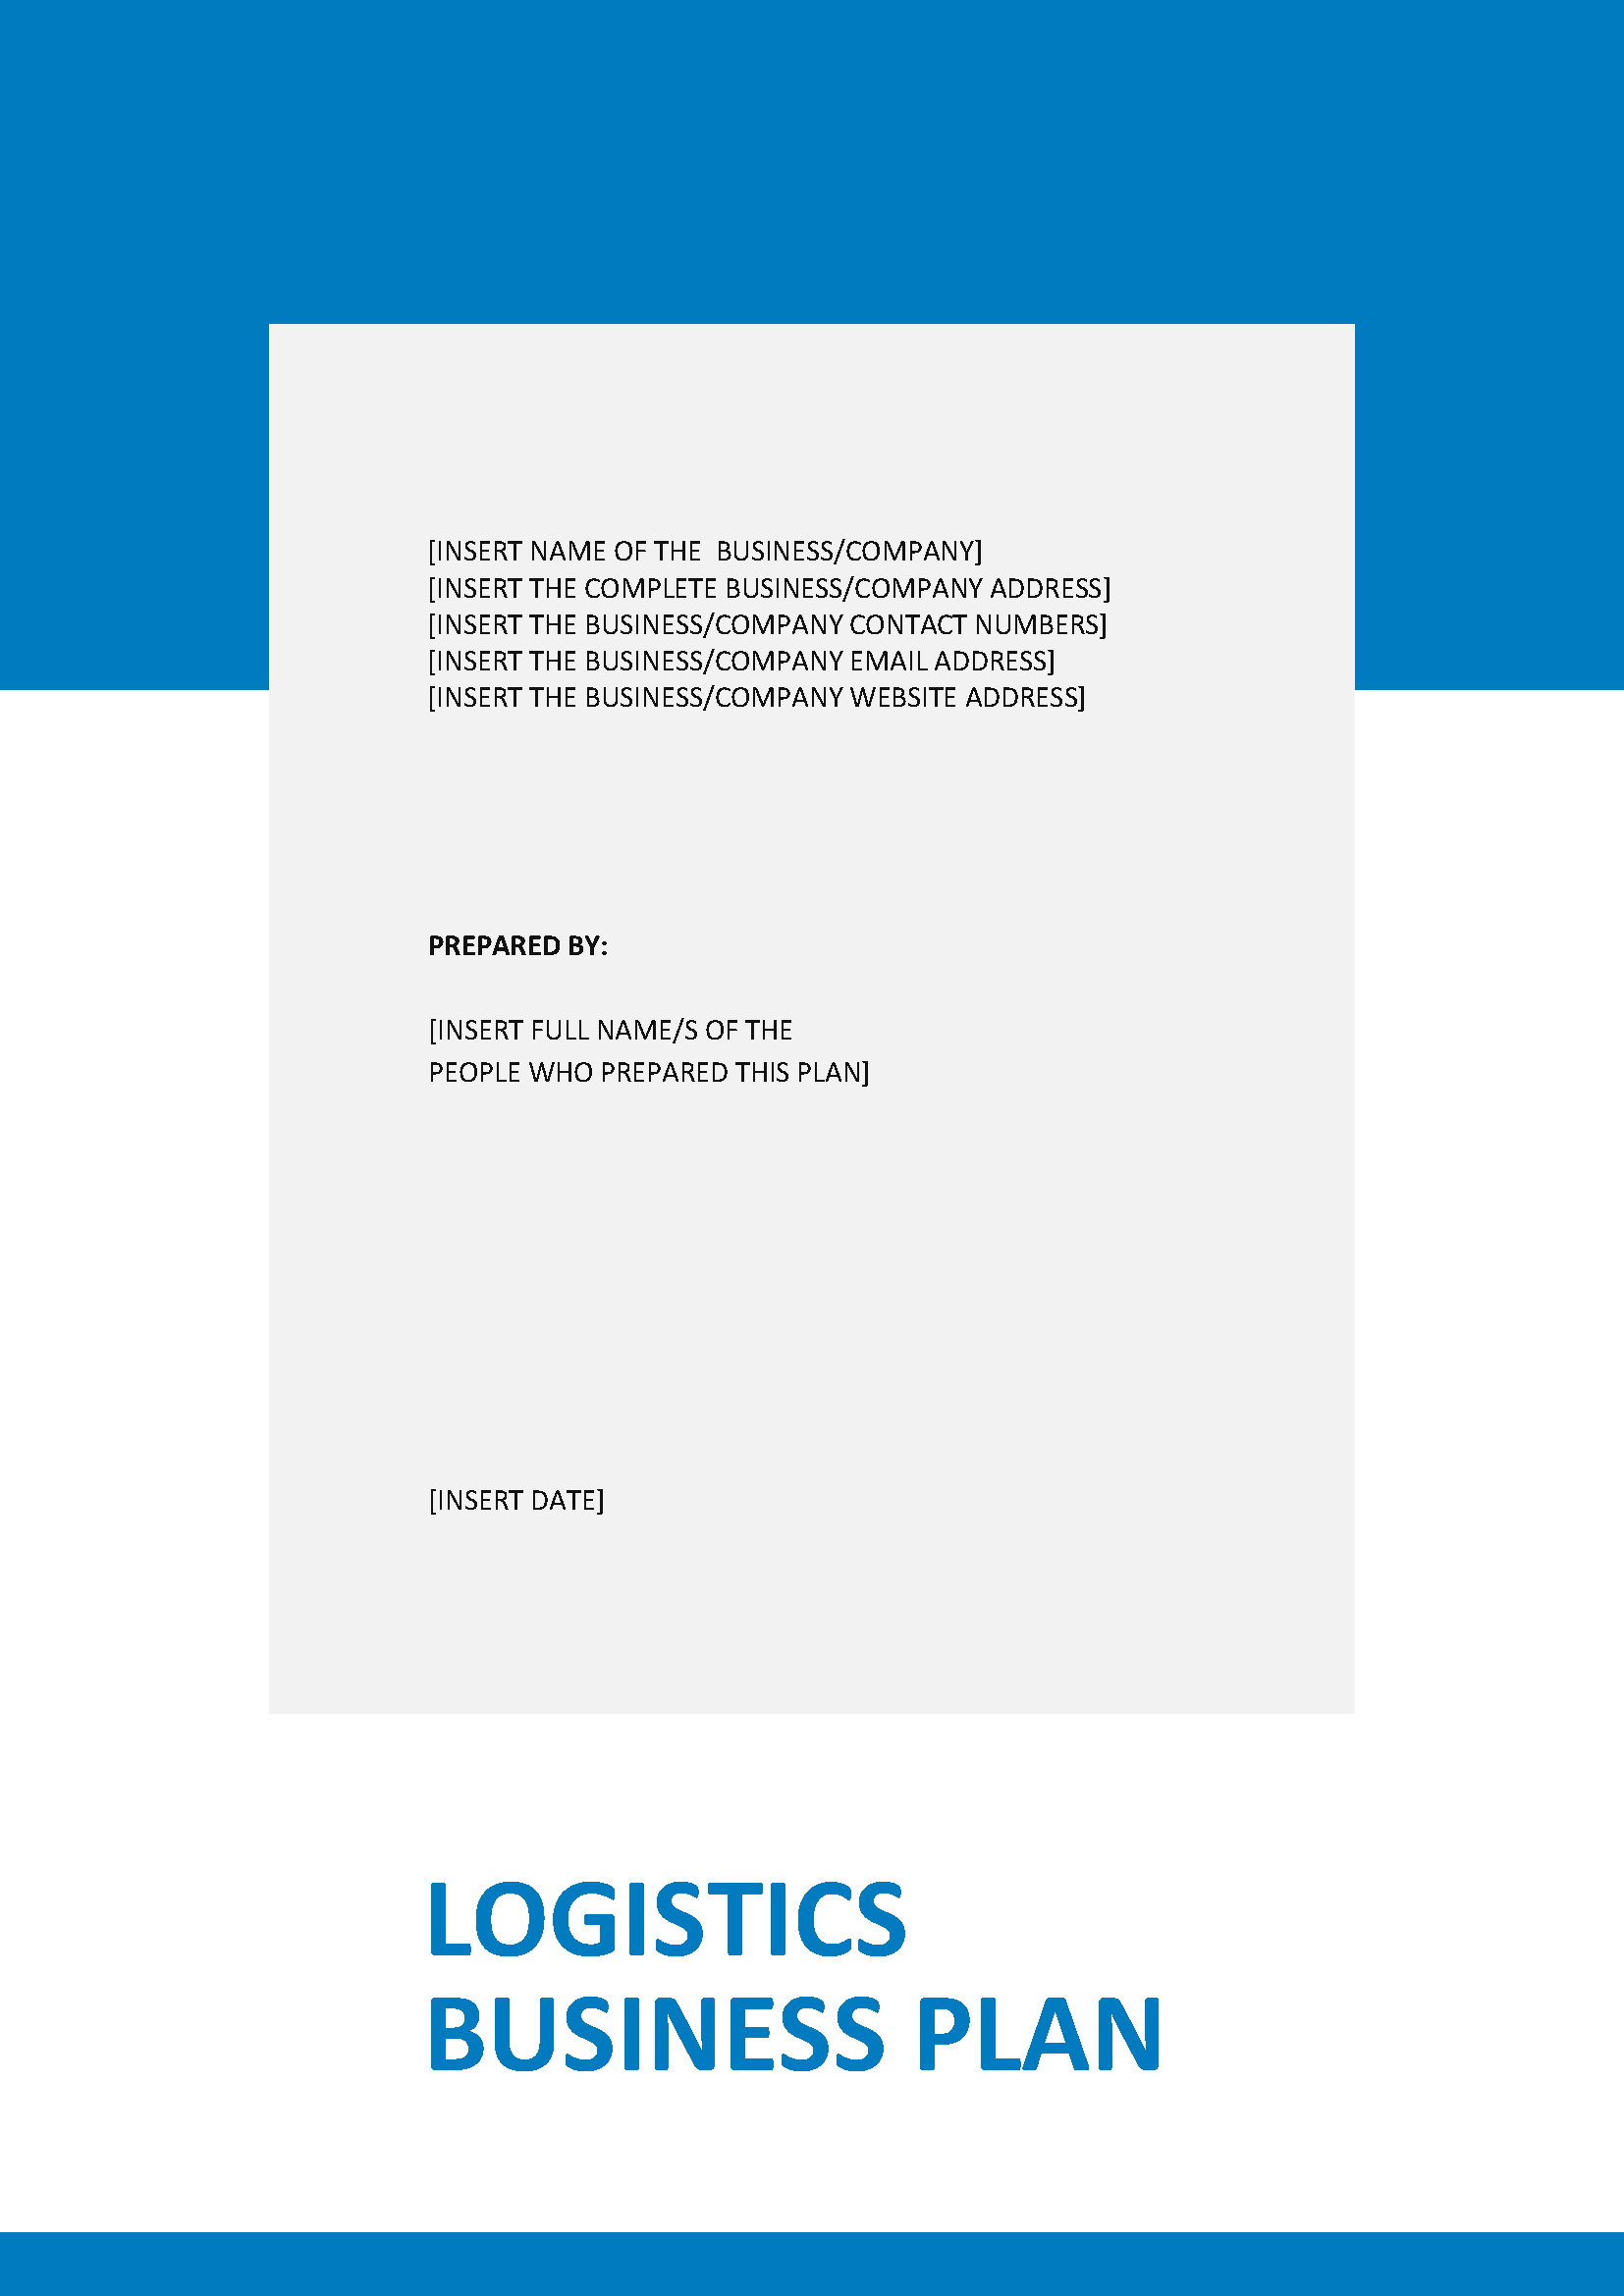 24 - Logistics Business Plan Template